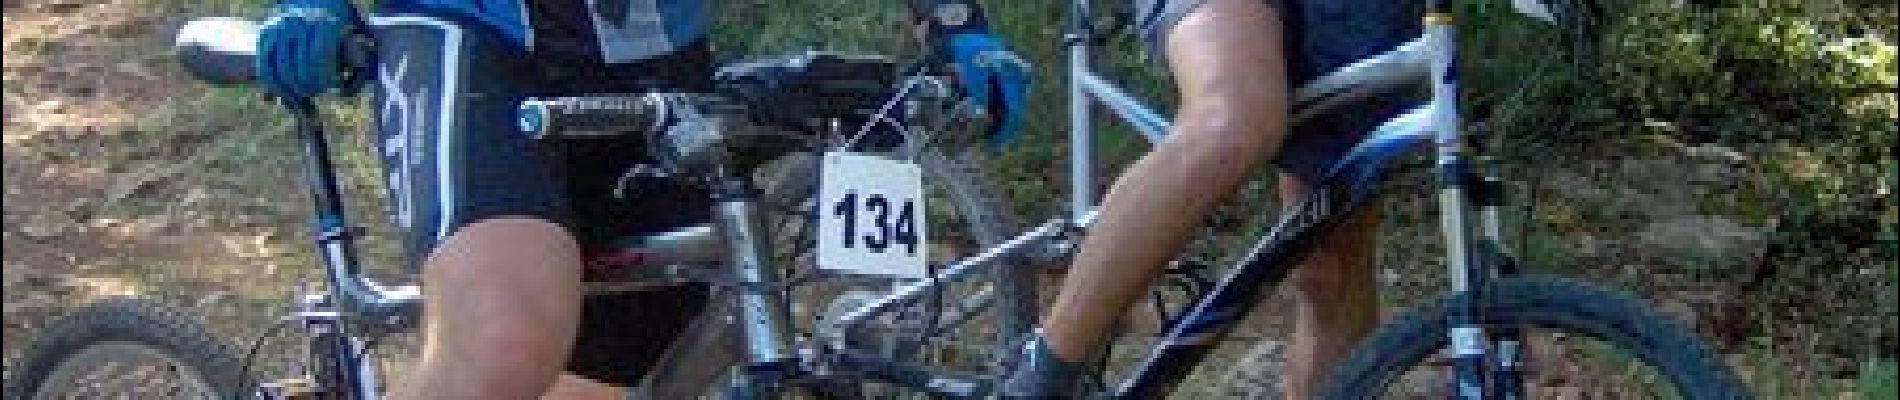 Trail Mountain bike Carnoules - Les drailles de Gaspard - Photo